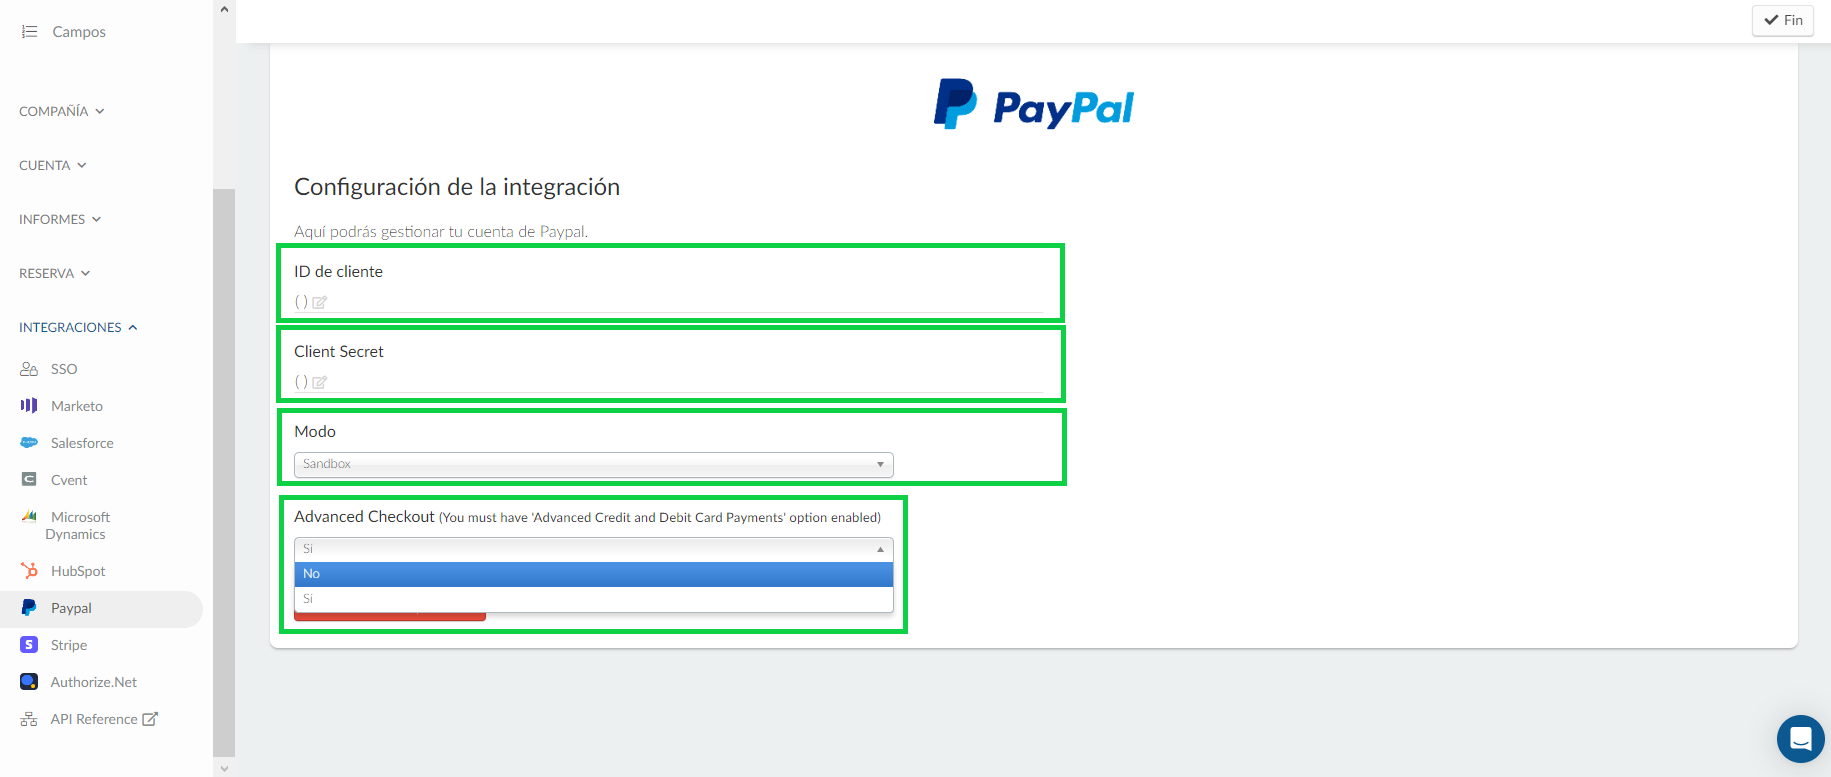 Completar detalles de la integración con Paypal